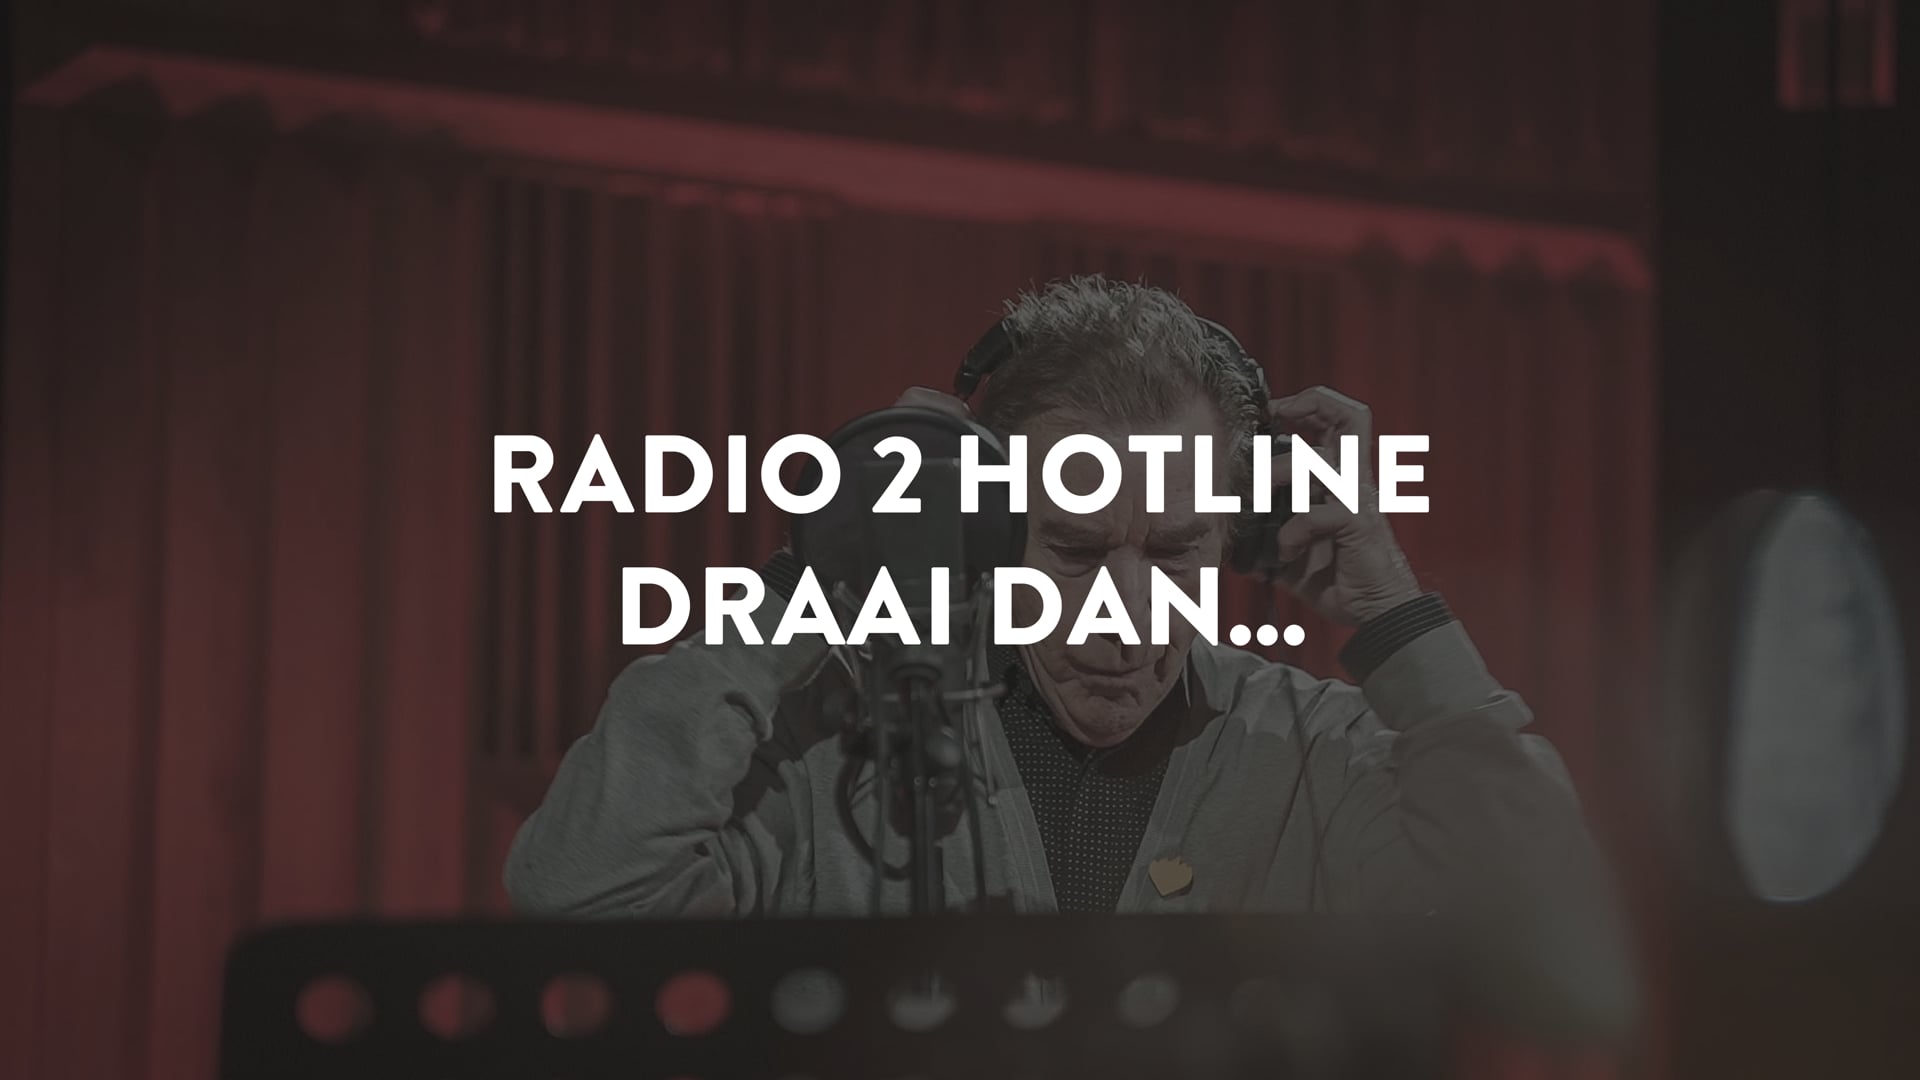 Radio 2 - Lied Radio 2 Hotline